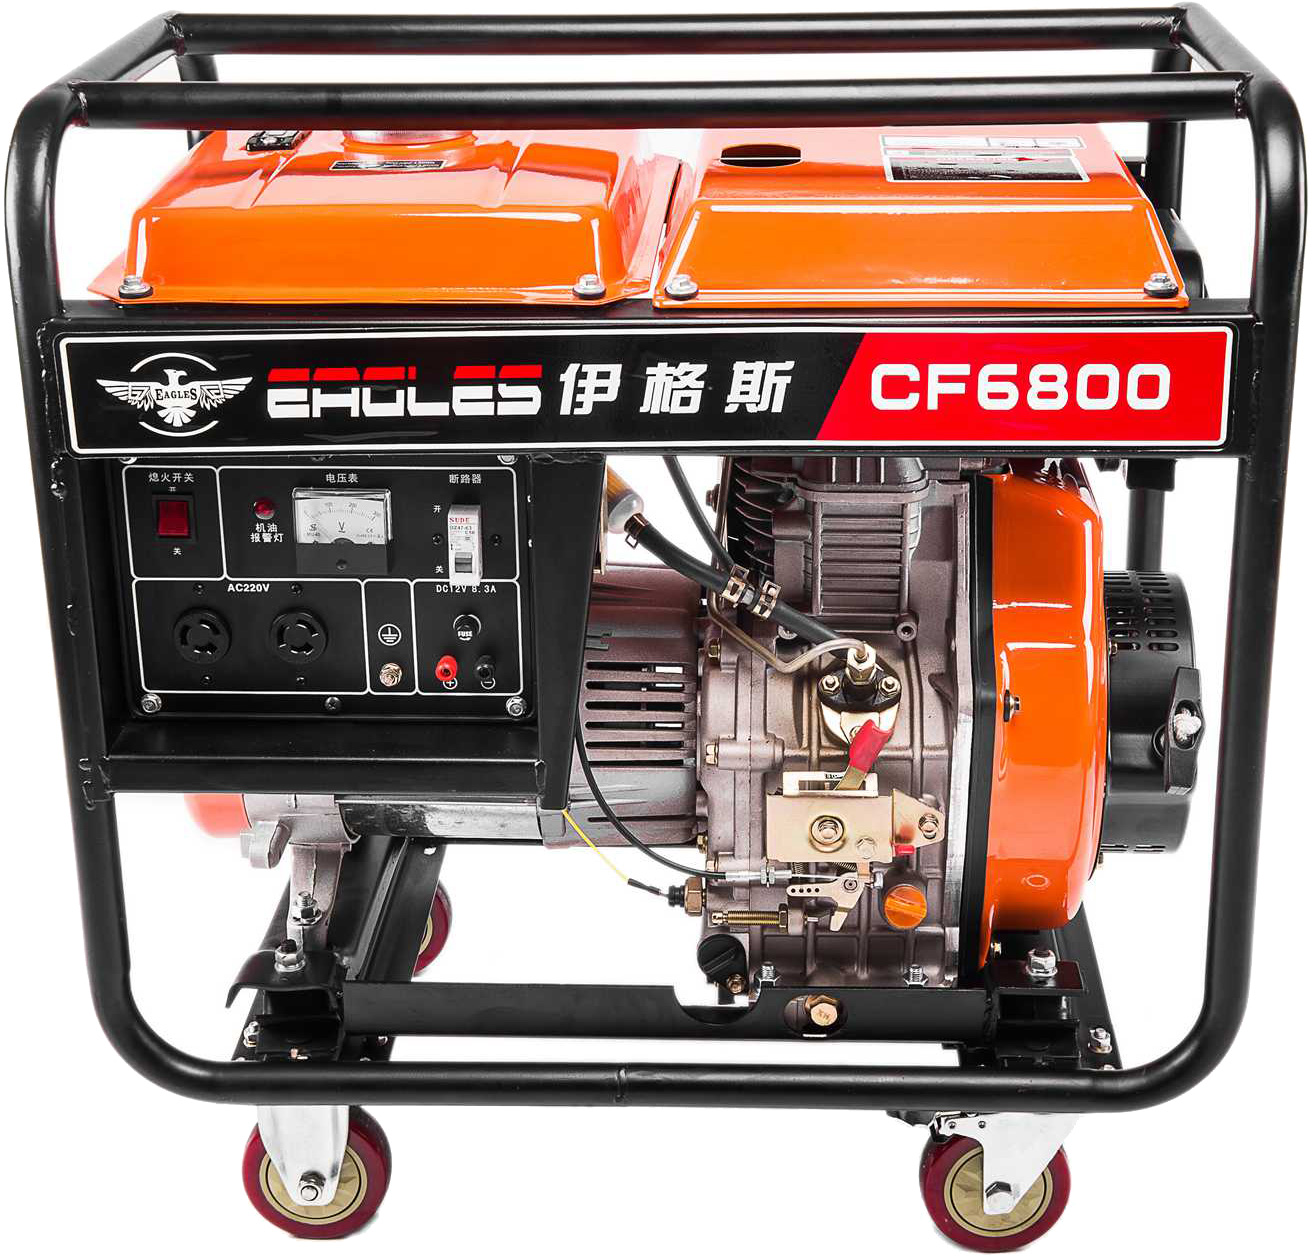 Cf6800 diesel generator